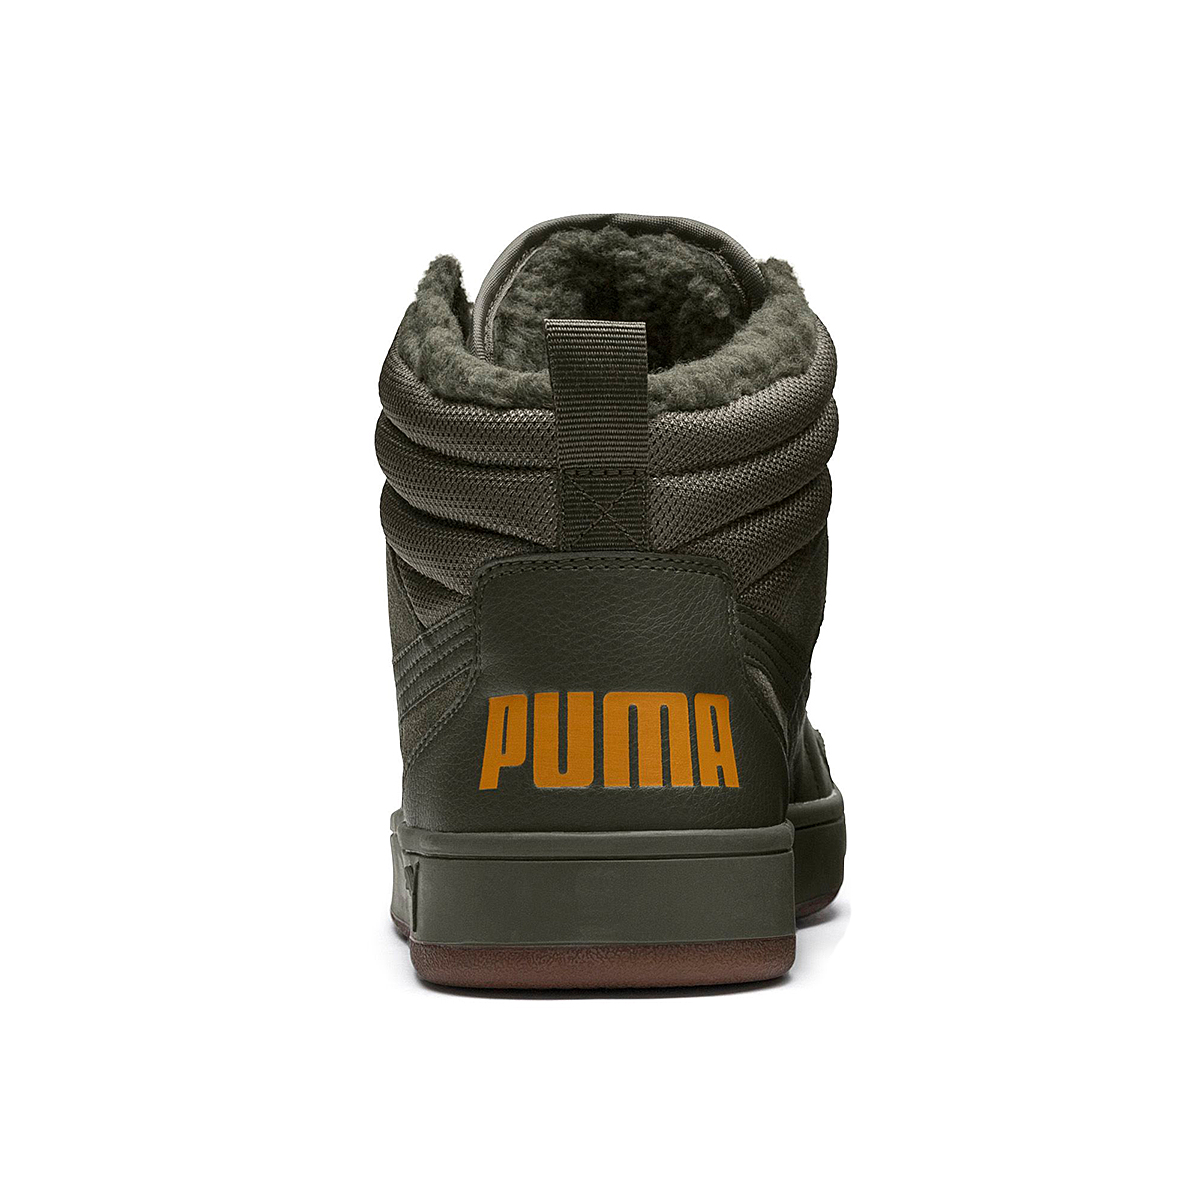 Puma Rebound Street SD Fur Winterstiefel Boots Herren grün gefüttert warm 366994